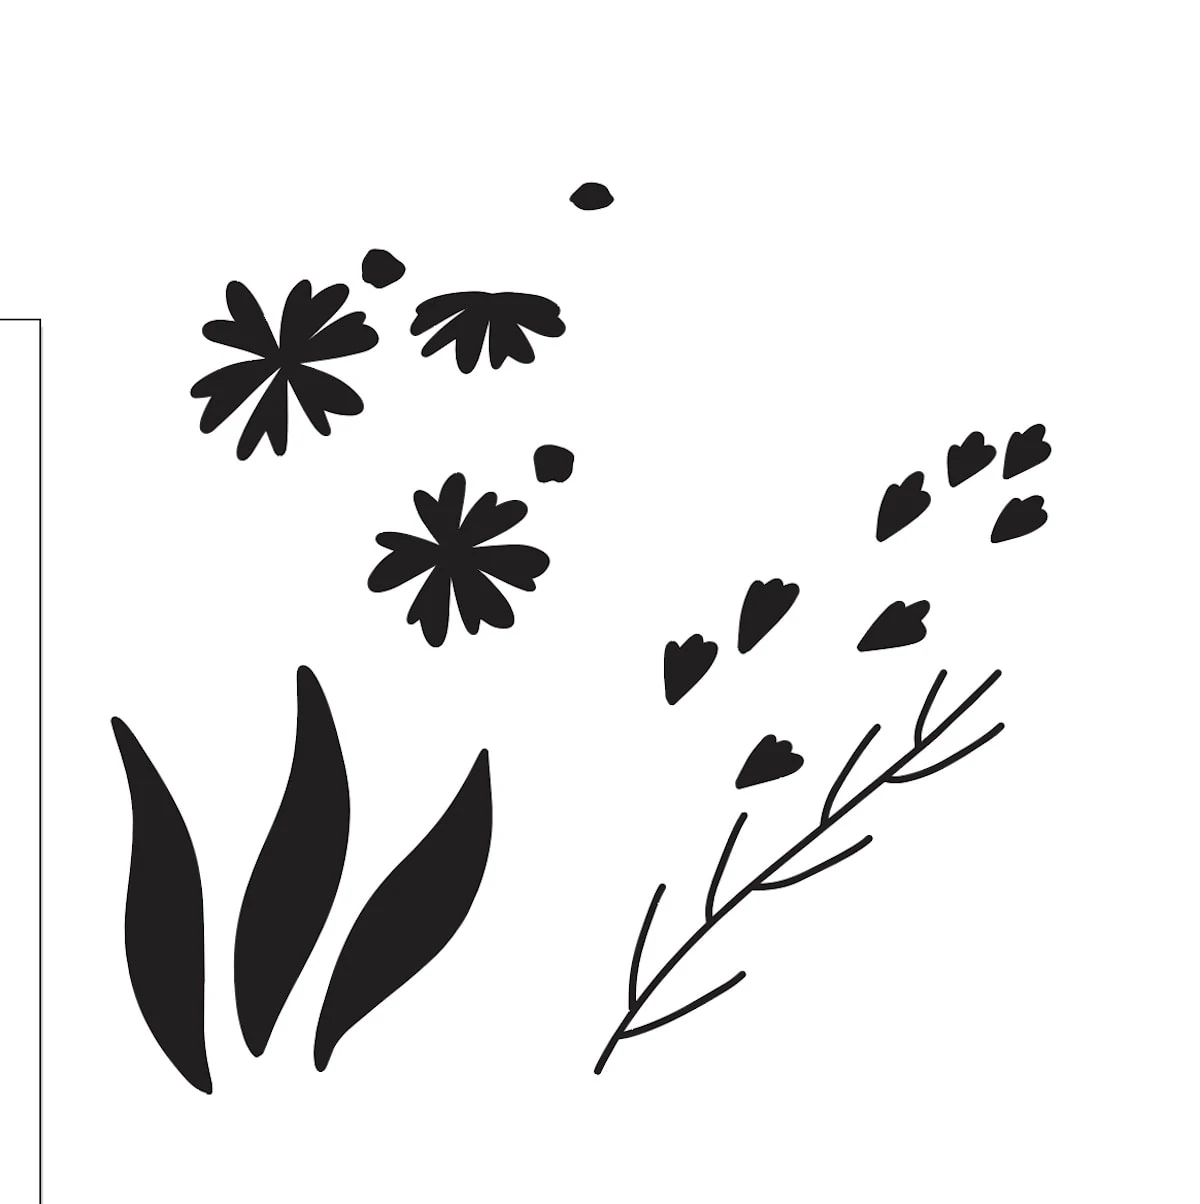 floral elements in illustrator